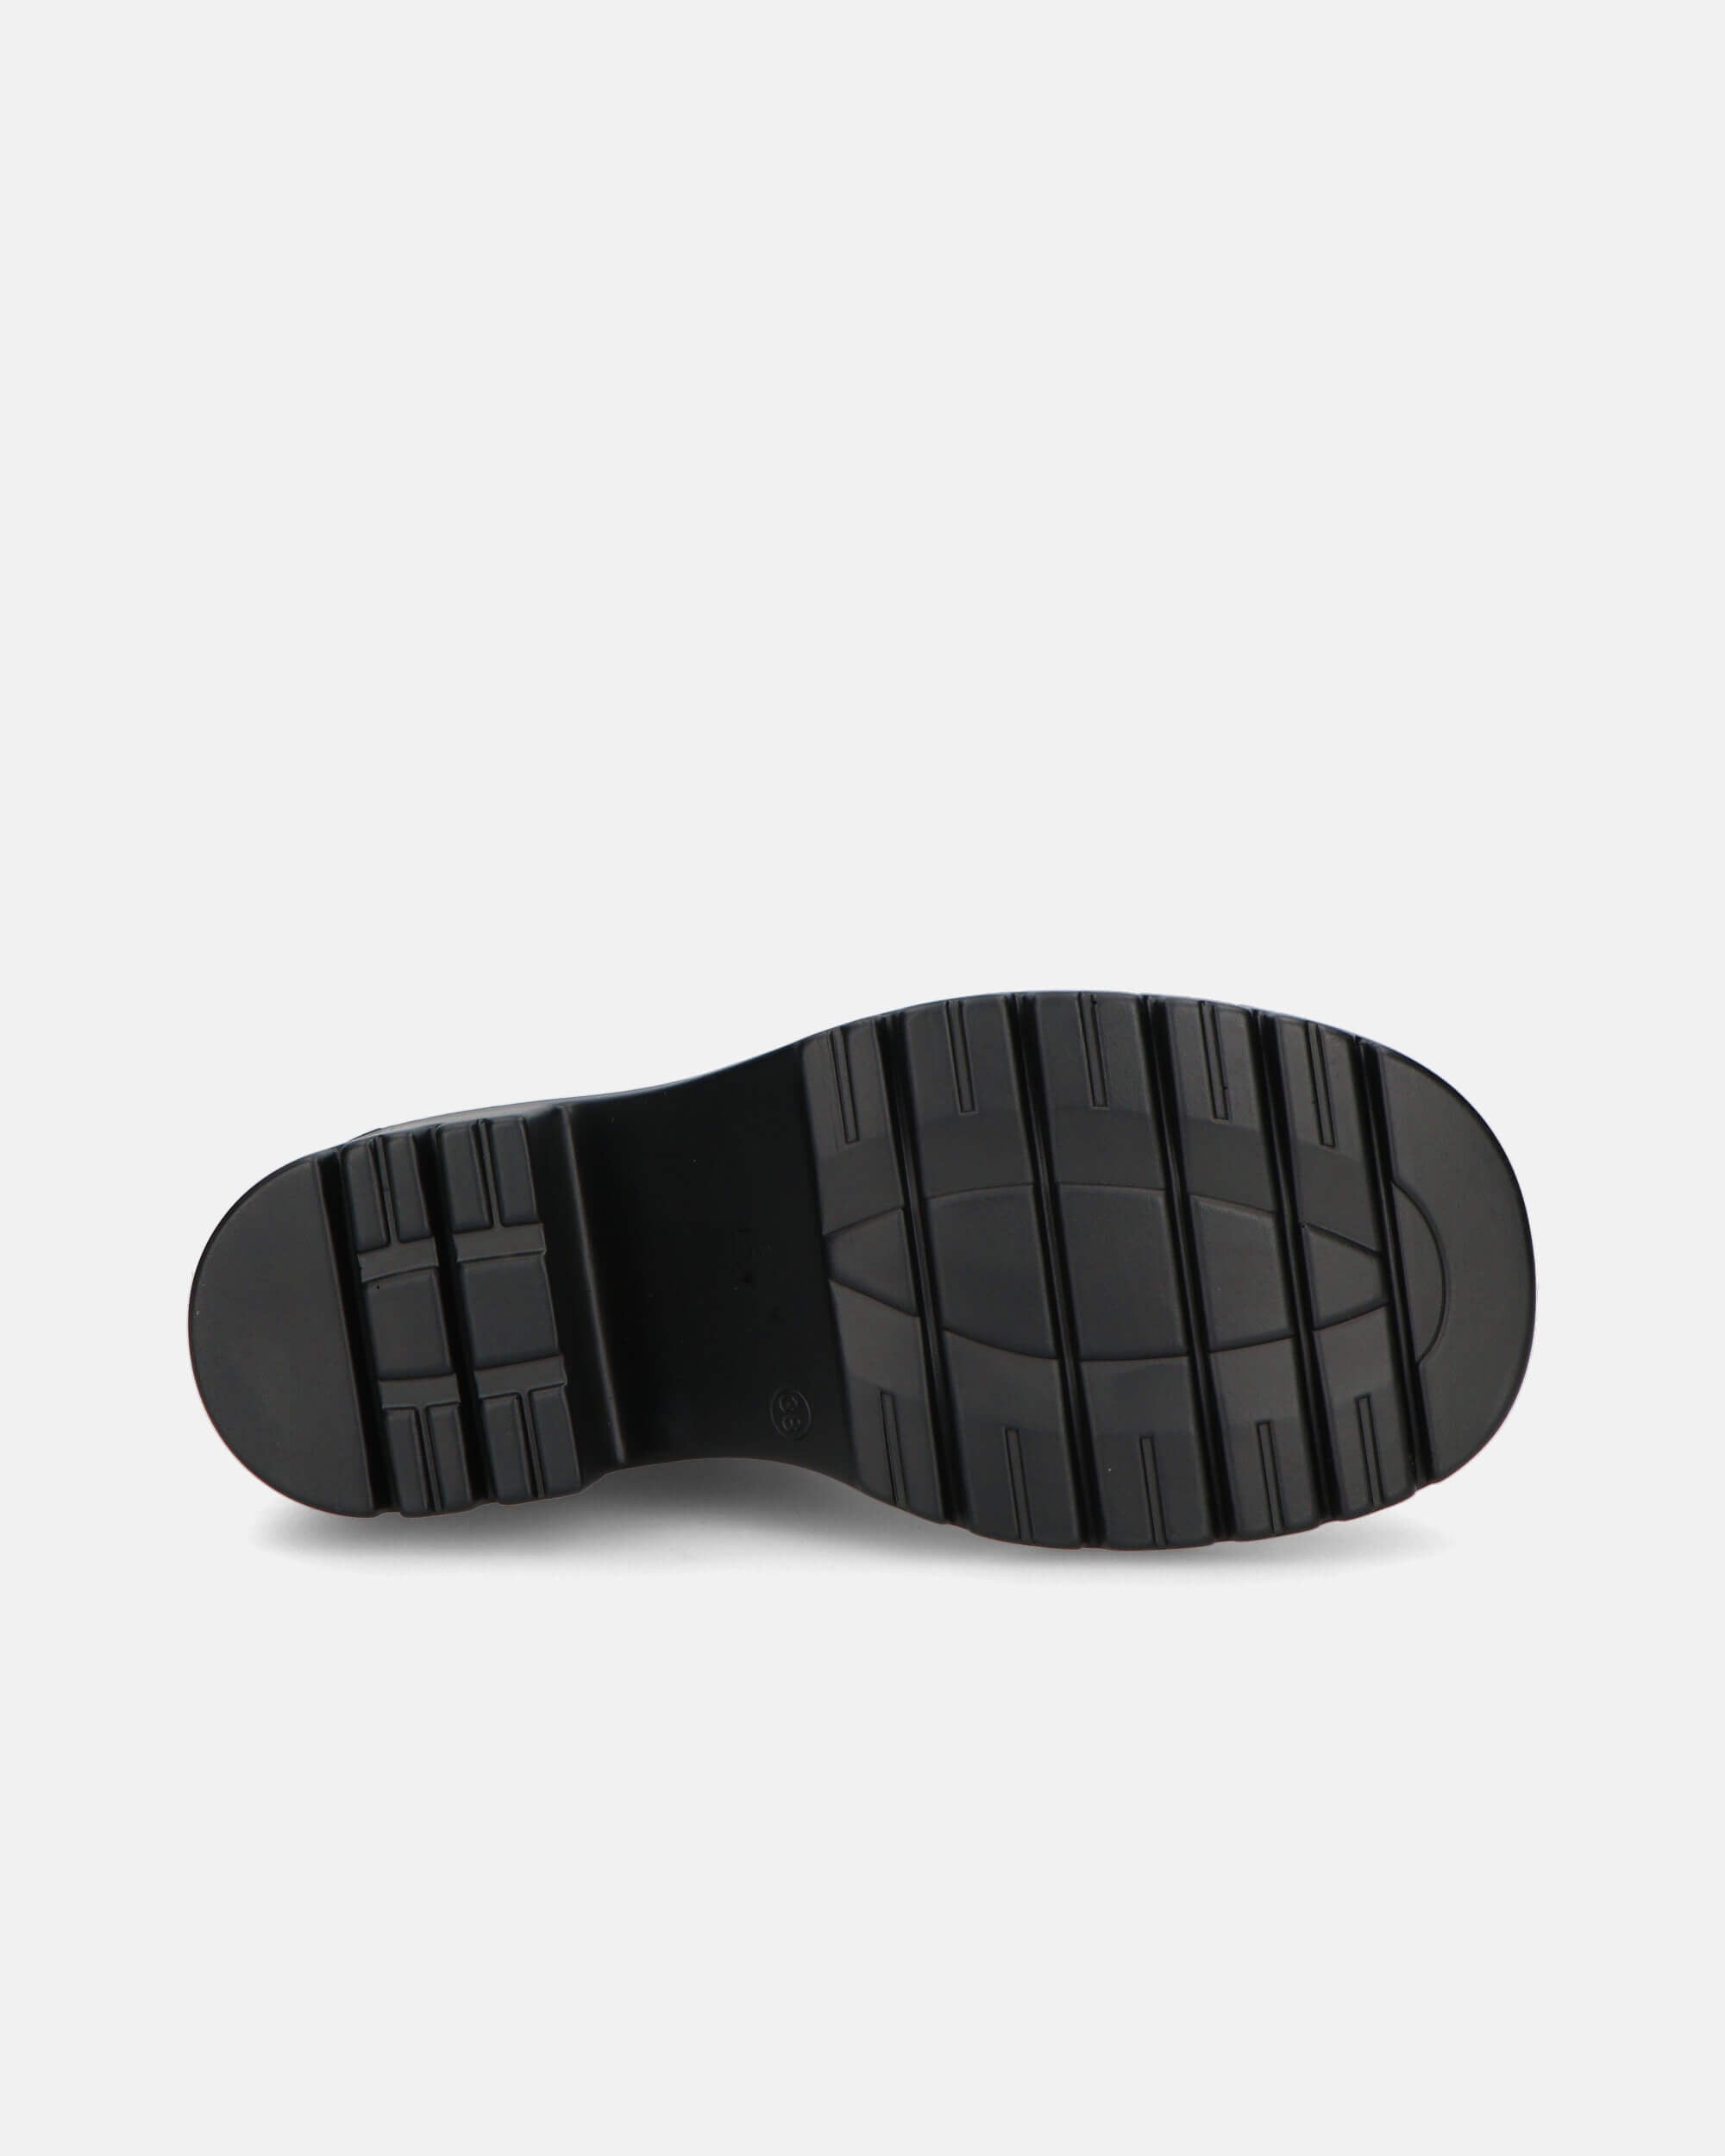 PRISCA - botines negros con elástico y cremallera lateral